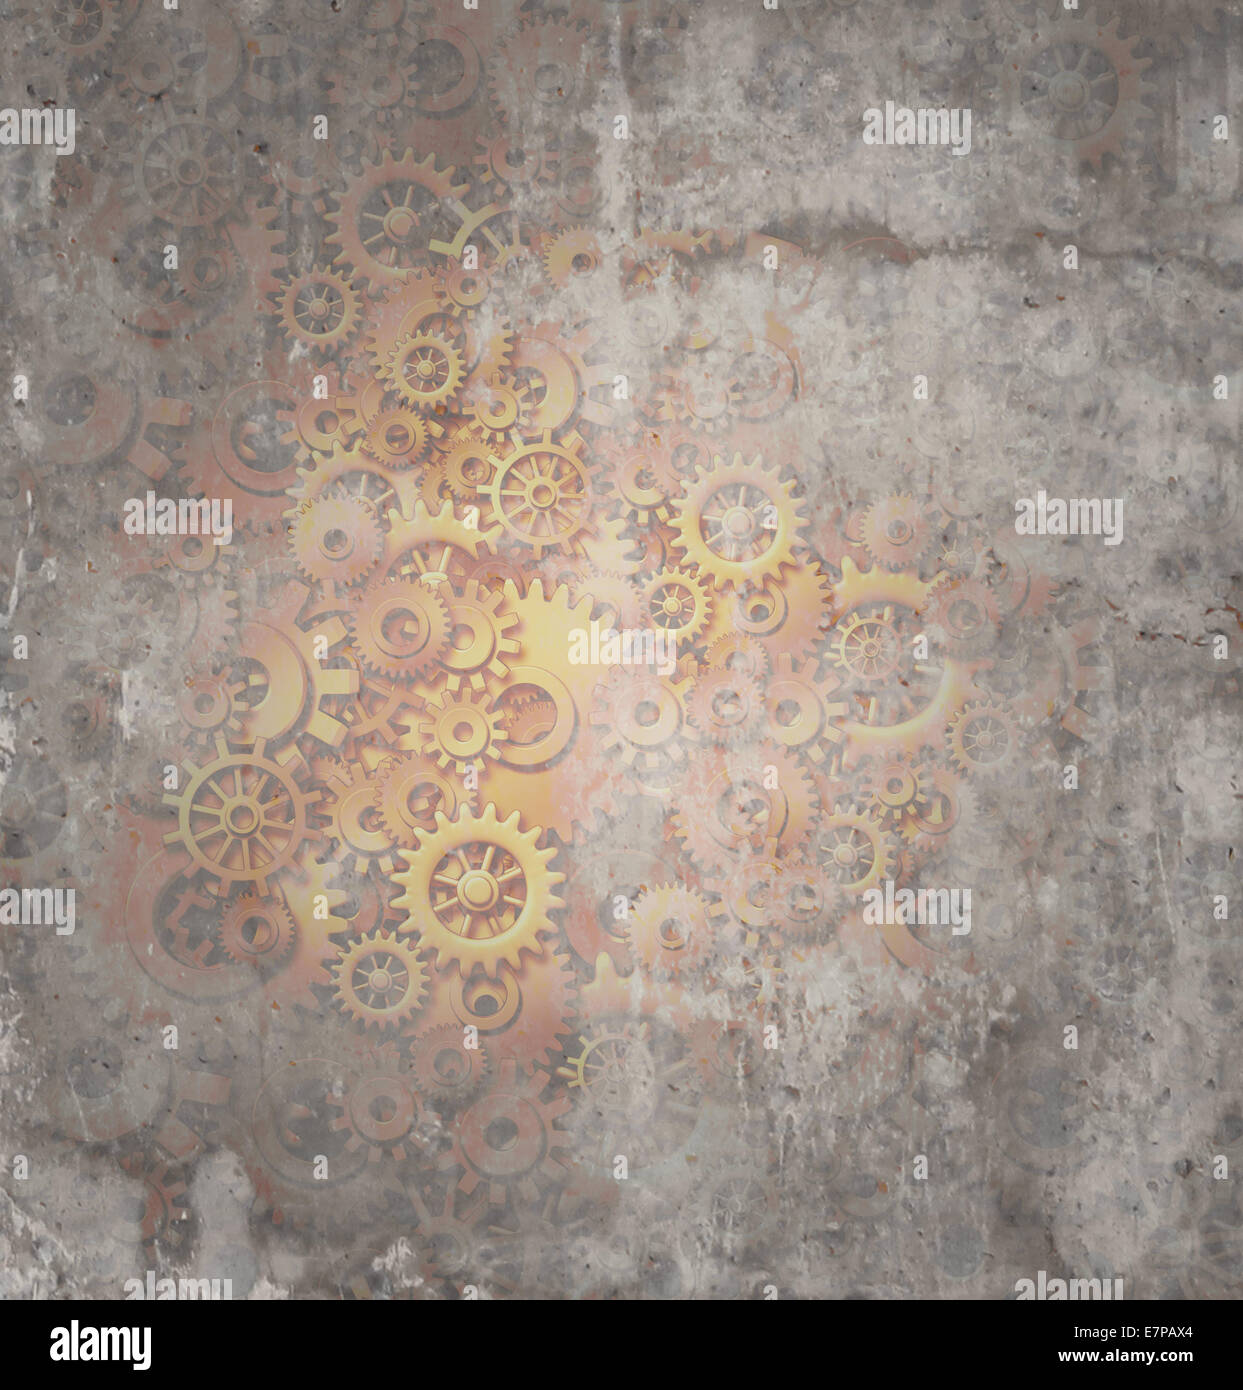 Steampunk sfondo grunge rustico come una texture science fiction concetto fatta di sporco il rame metallico degli ingranaggi e ruote dentate come un simbolo della tecnologia del tema futuristicscifi macchina con copia spazio. Foto Stock